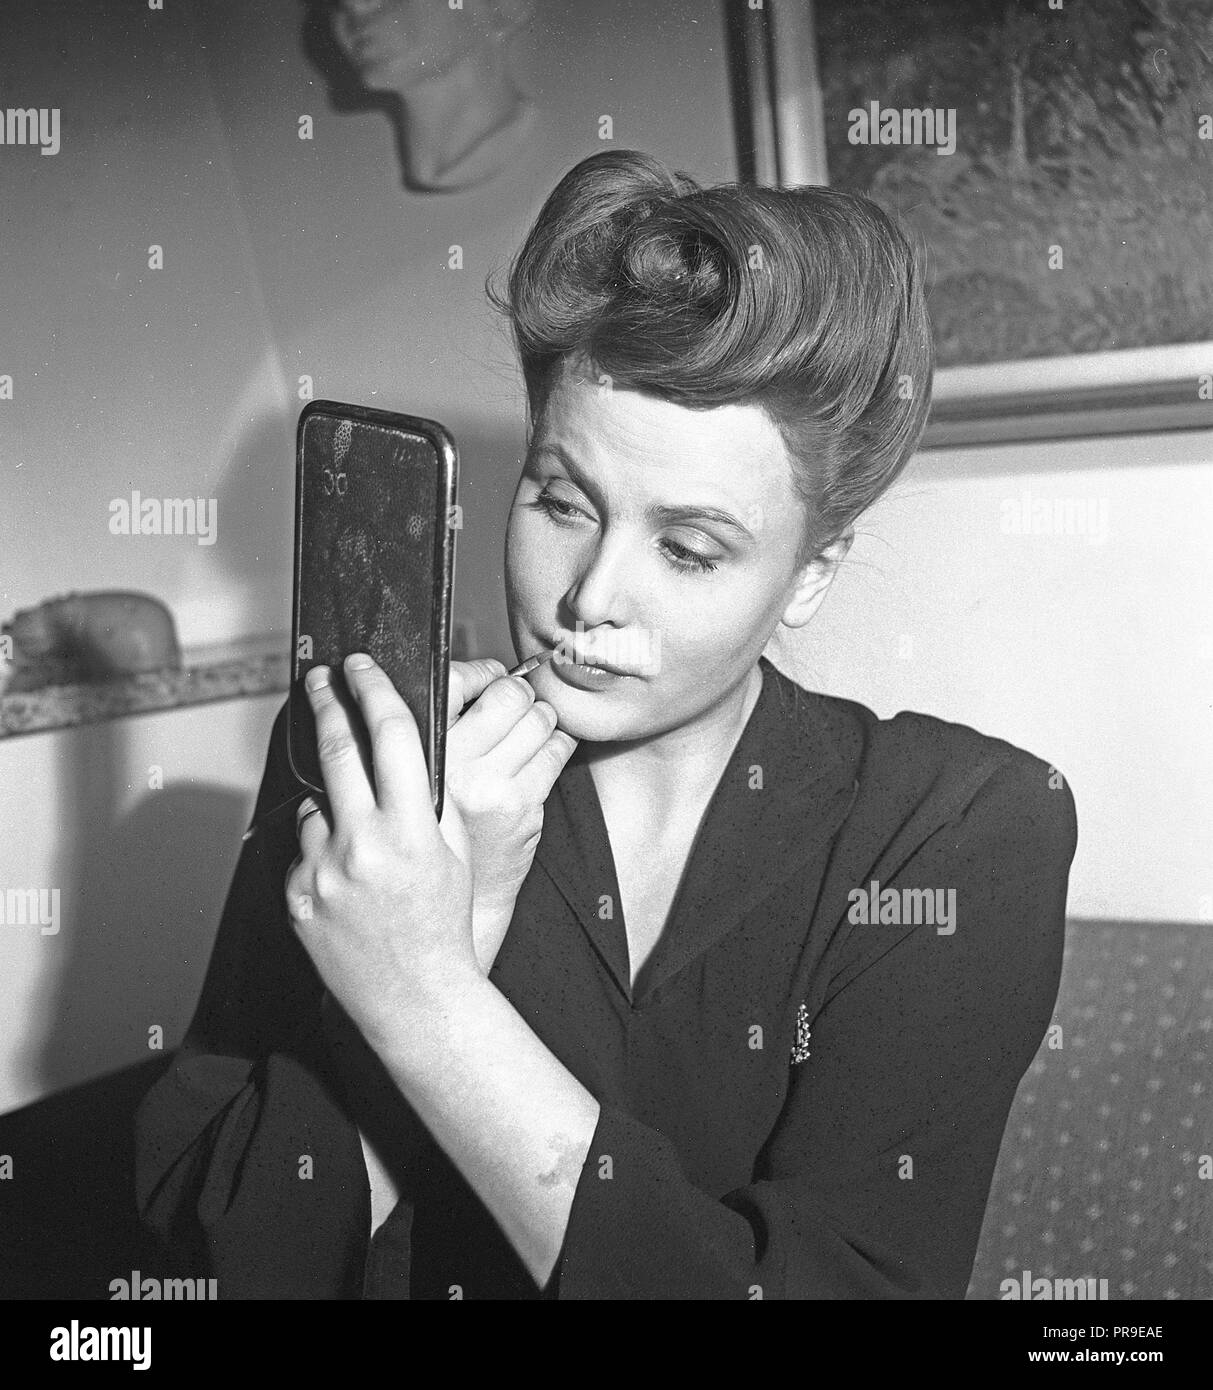 L'actrice suédoise Birgit Tengroth , 1915-1983. L'on voit ici lors de la pose de son maquillage. La coiffure est typique des années 40. Suède 1944. Kristoffersson Photo ref G41-019 Banque D'Images